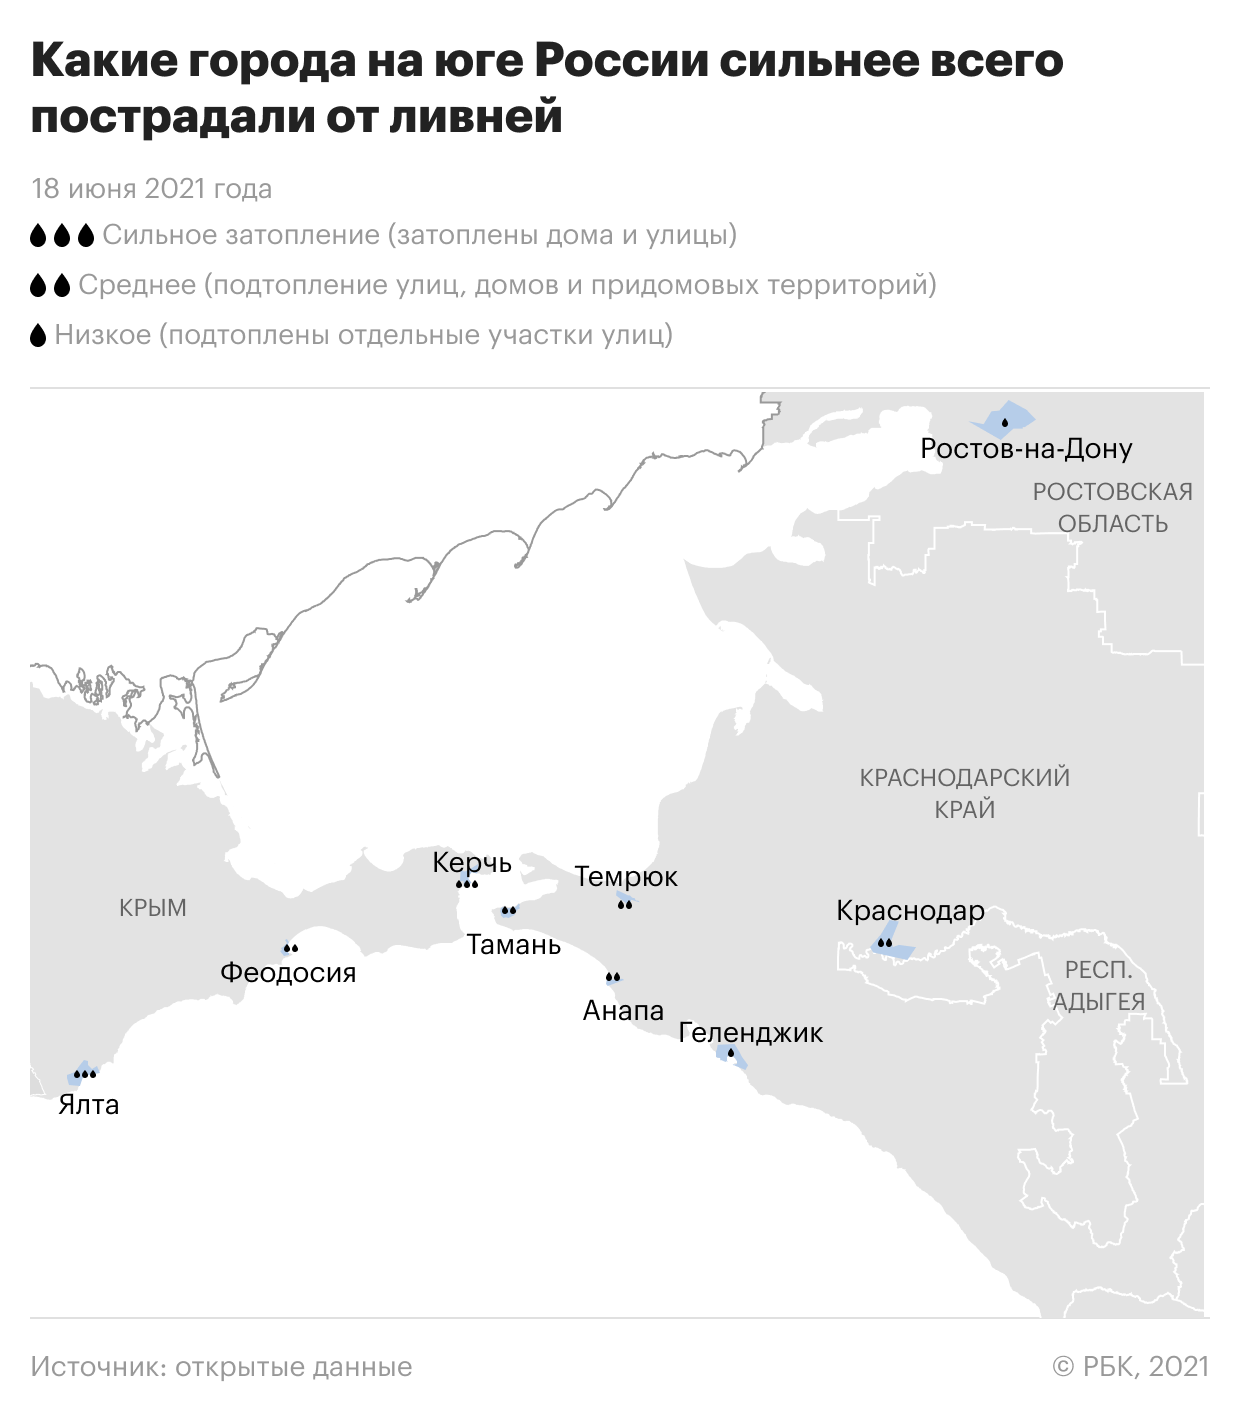 Какие города юга России пострадали от ливней. Инфографика